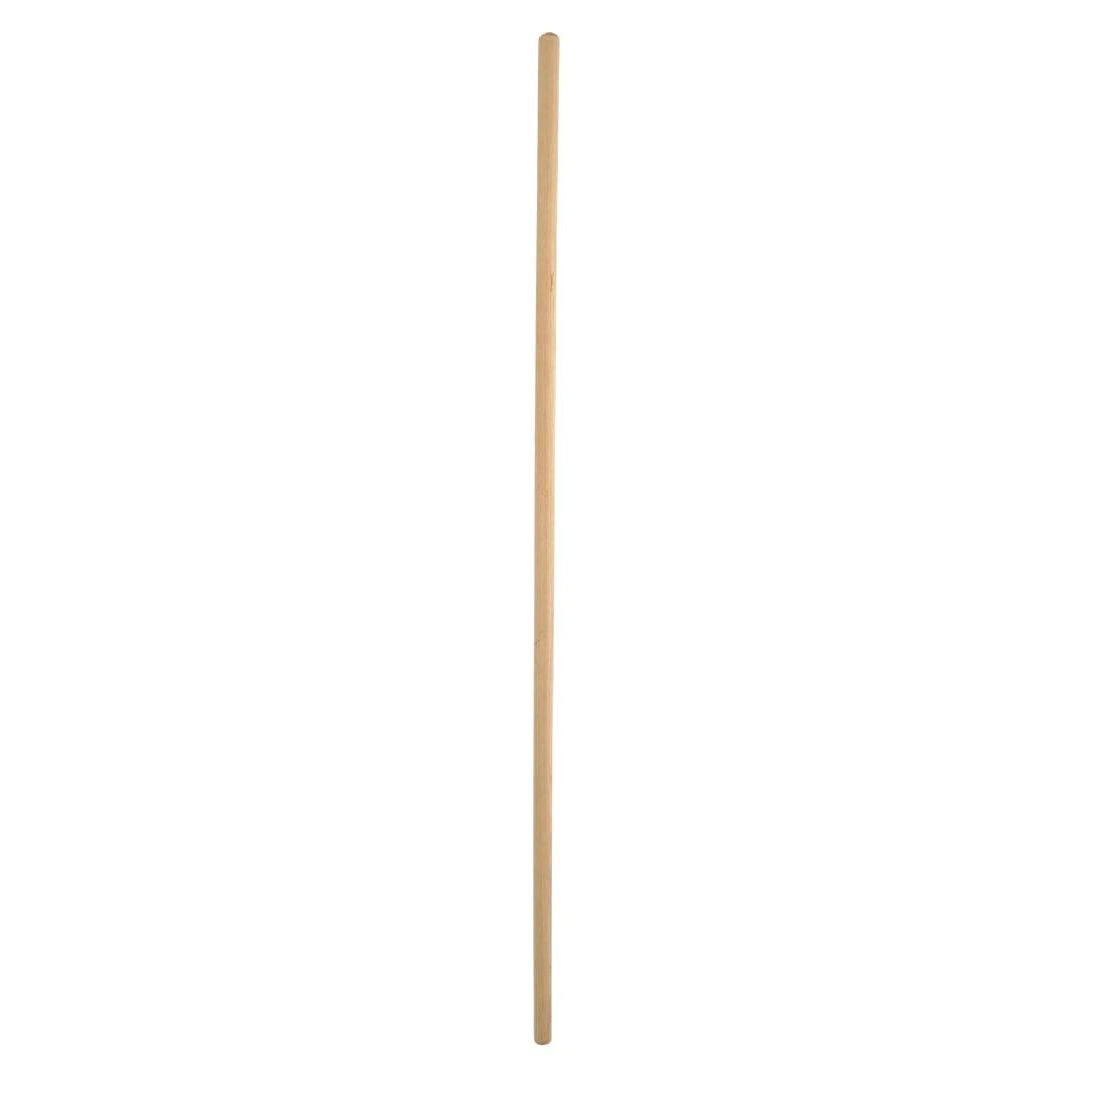 Wooden Broom Handle - Handle Size: 102mm (4").